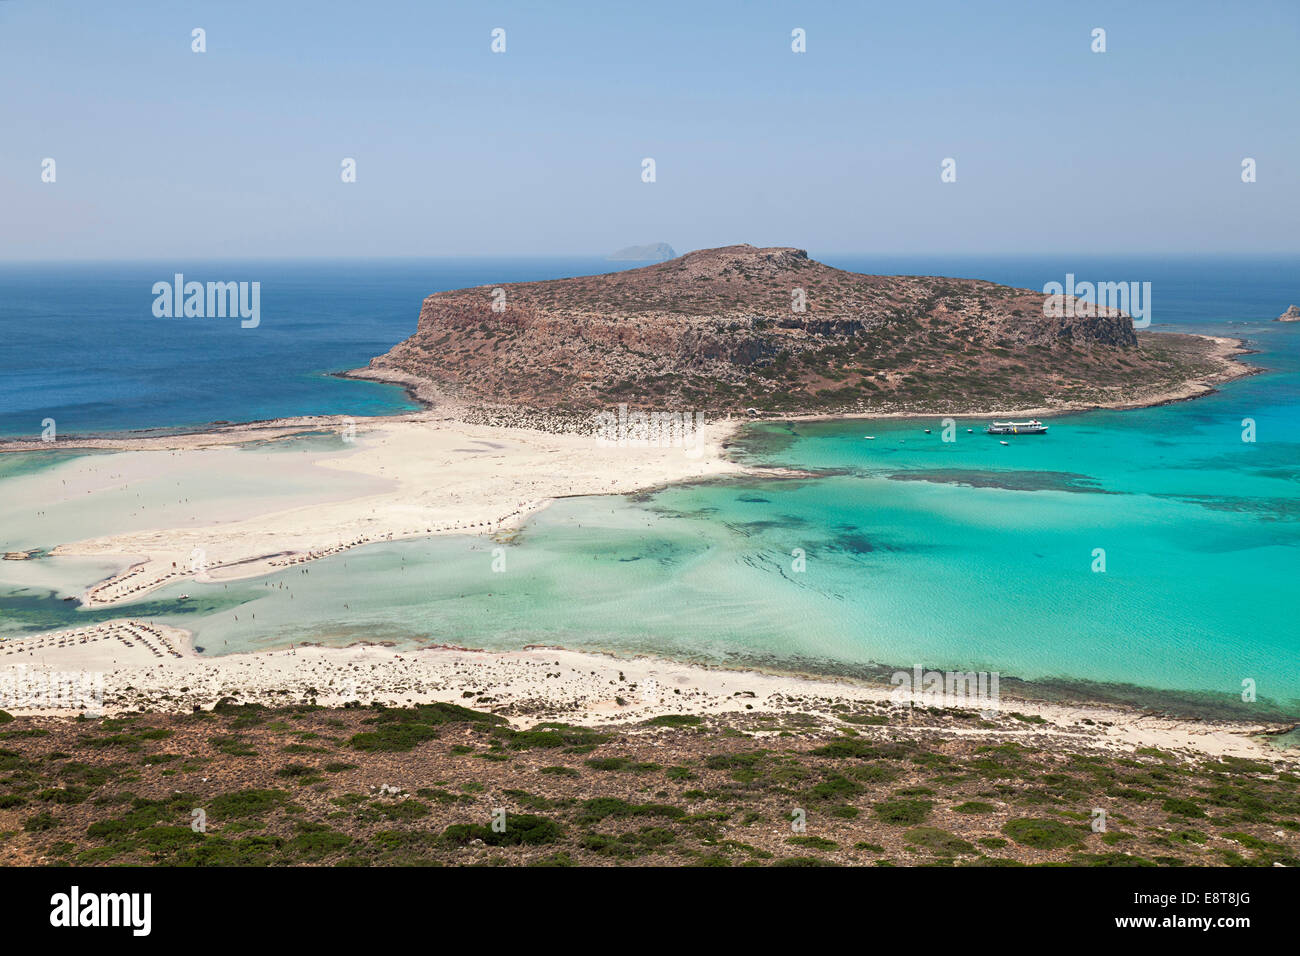 Beach and Bay of Balos, Crete, Greece Stock Photo